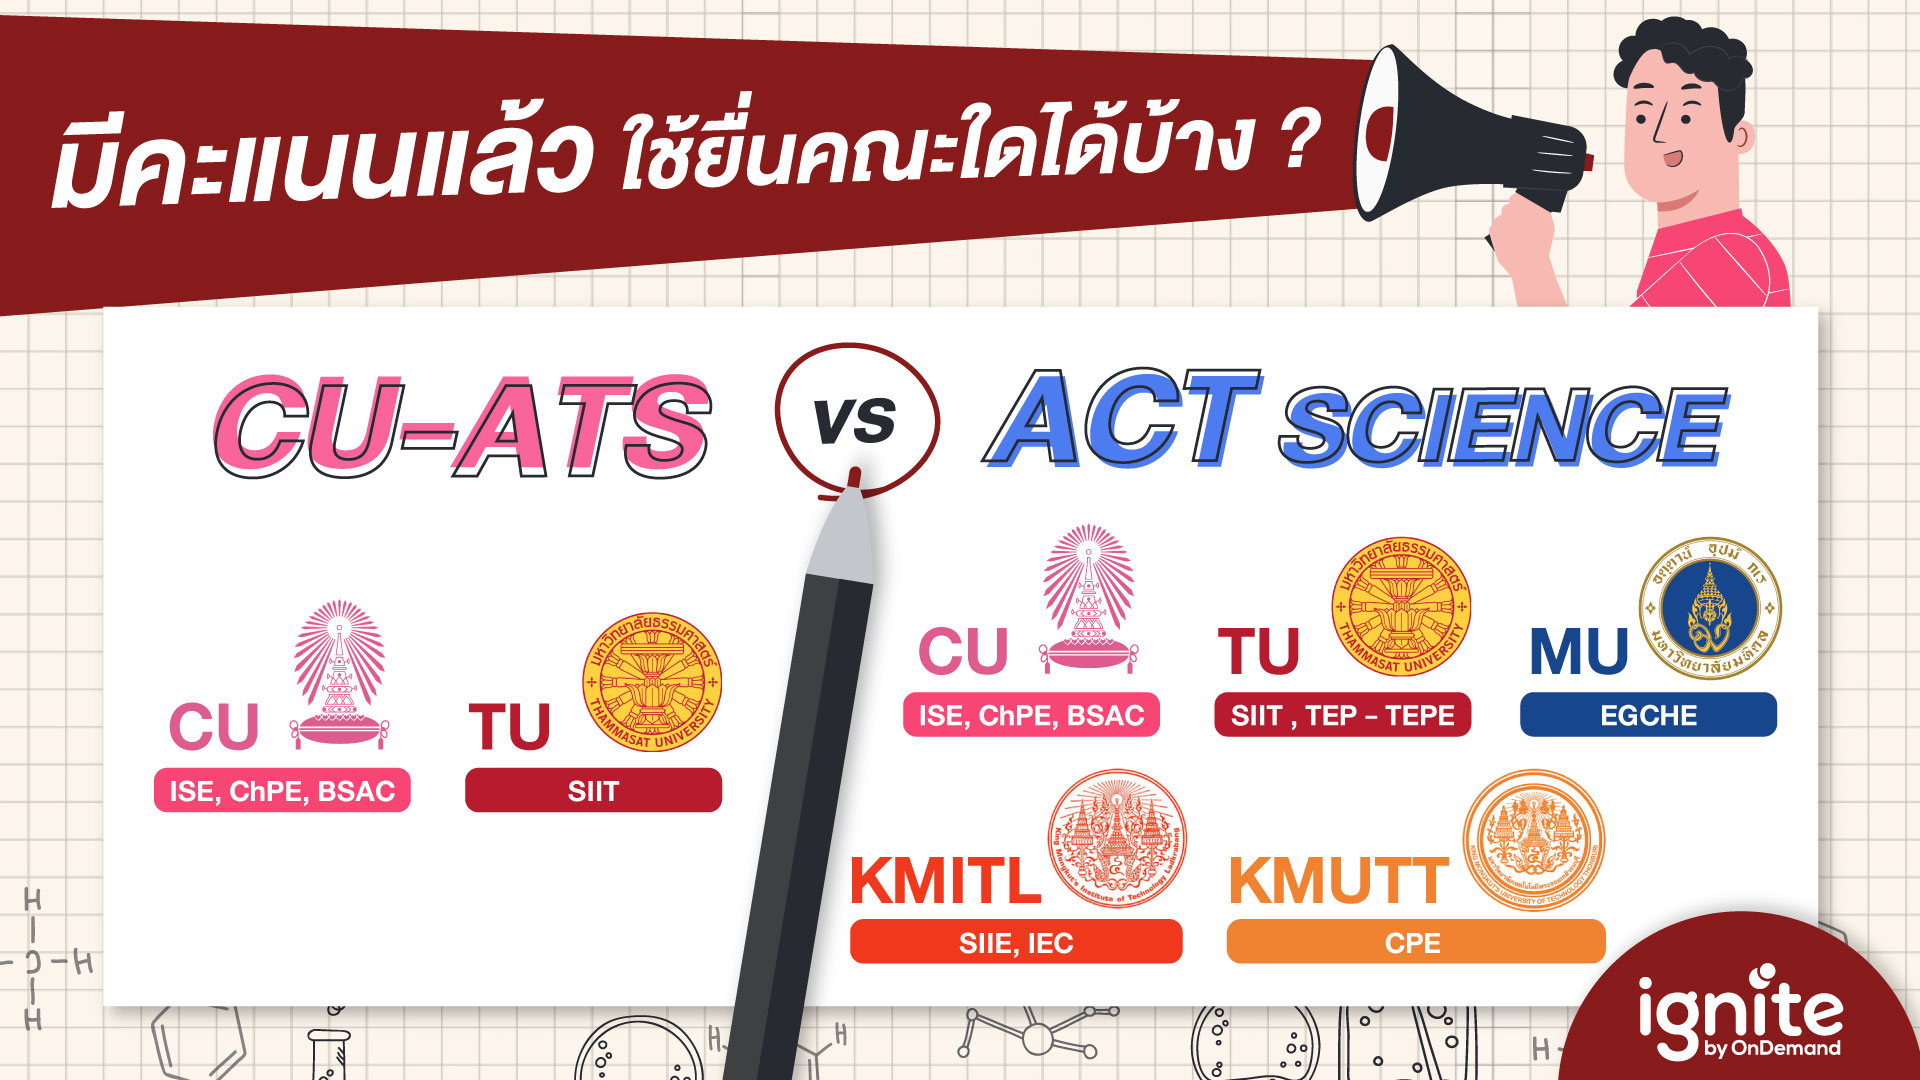 คะแนน CU-ATS vs ACT SCIENCE ใช้ยื่นคณะใดได้บ้าง - Bigcover3